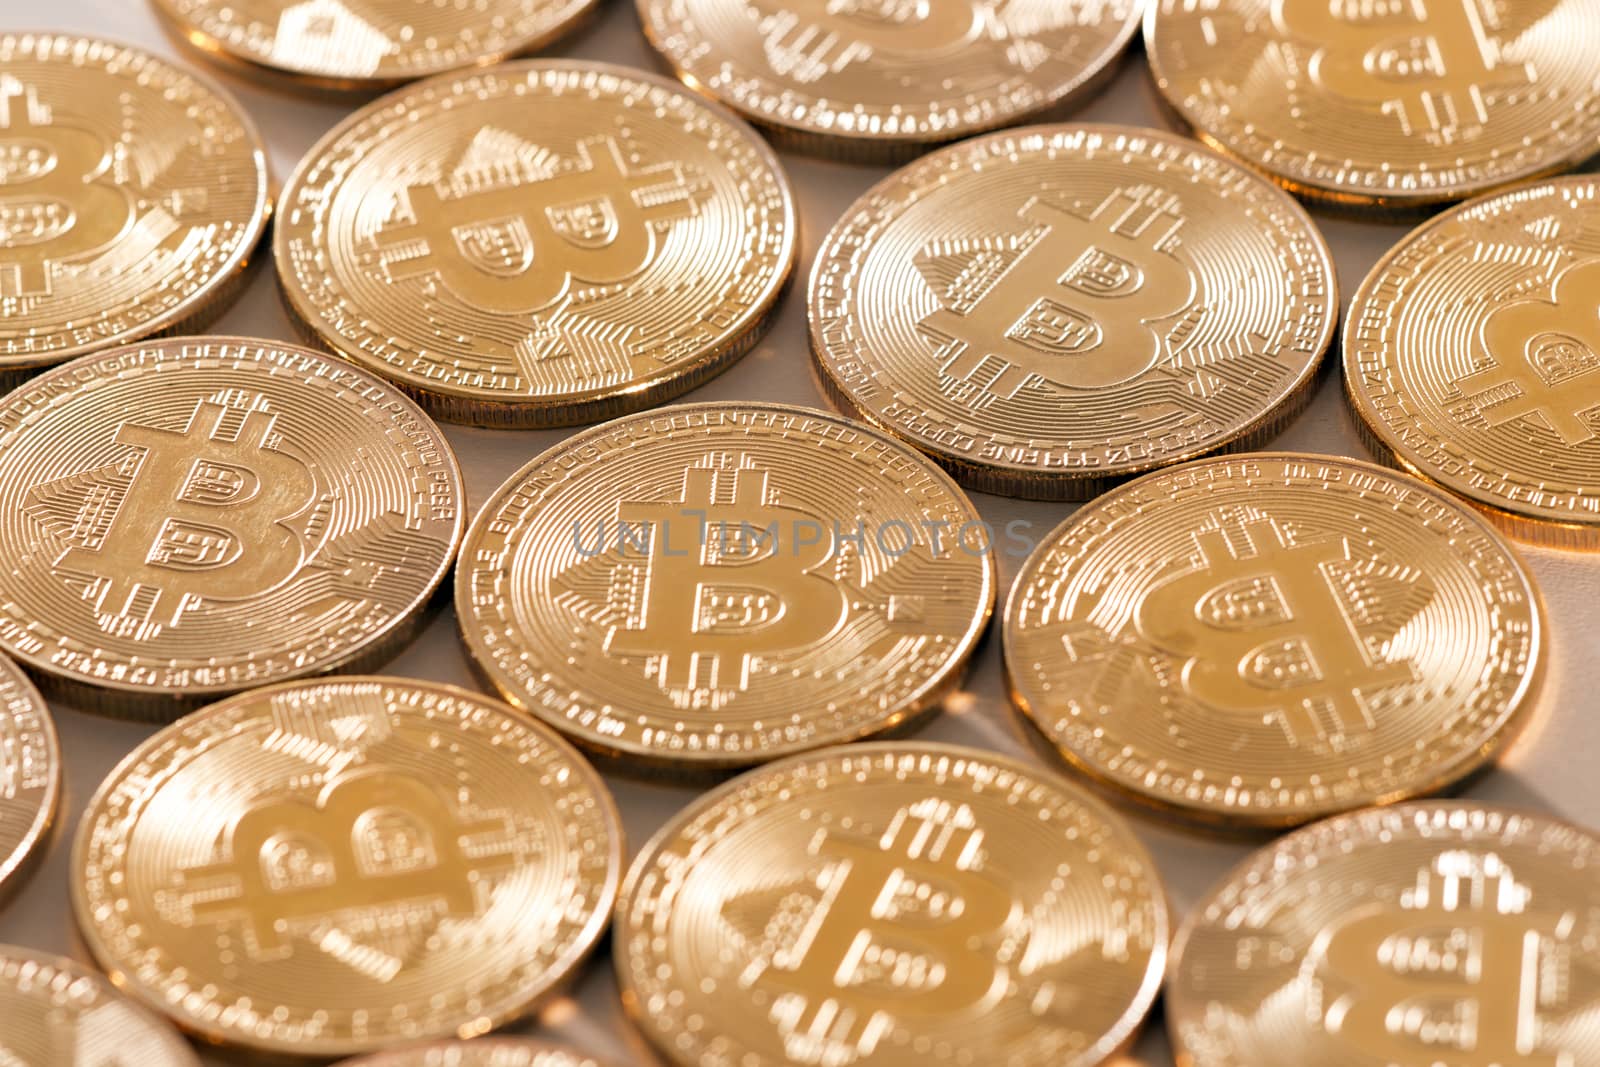 Shiny golden bitcoins by membio